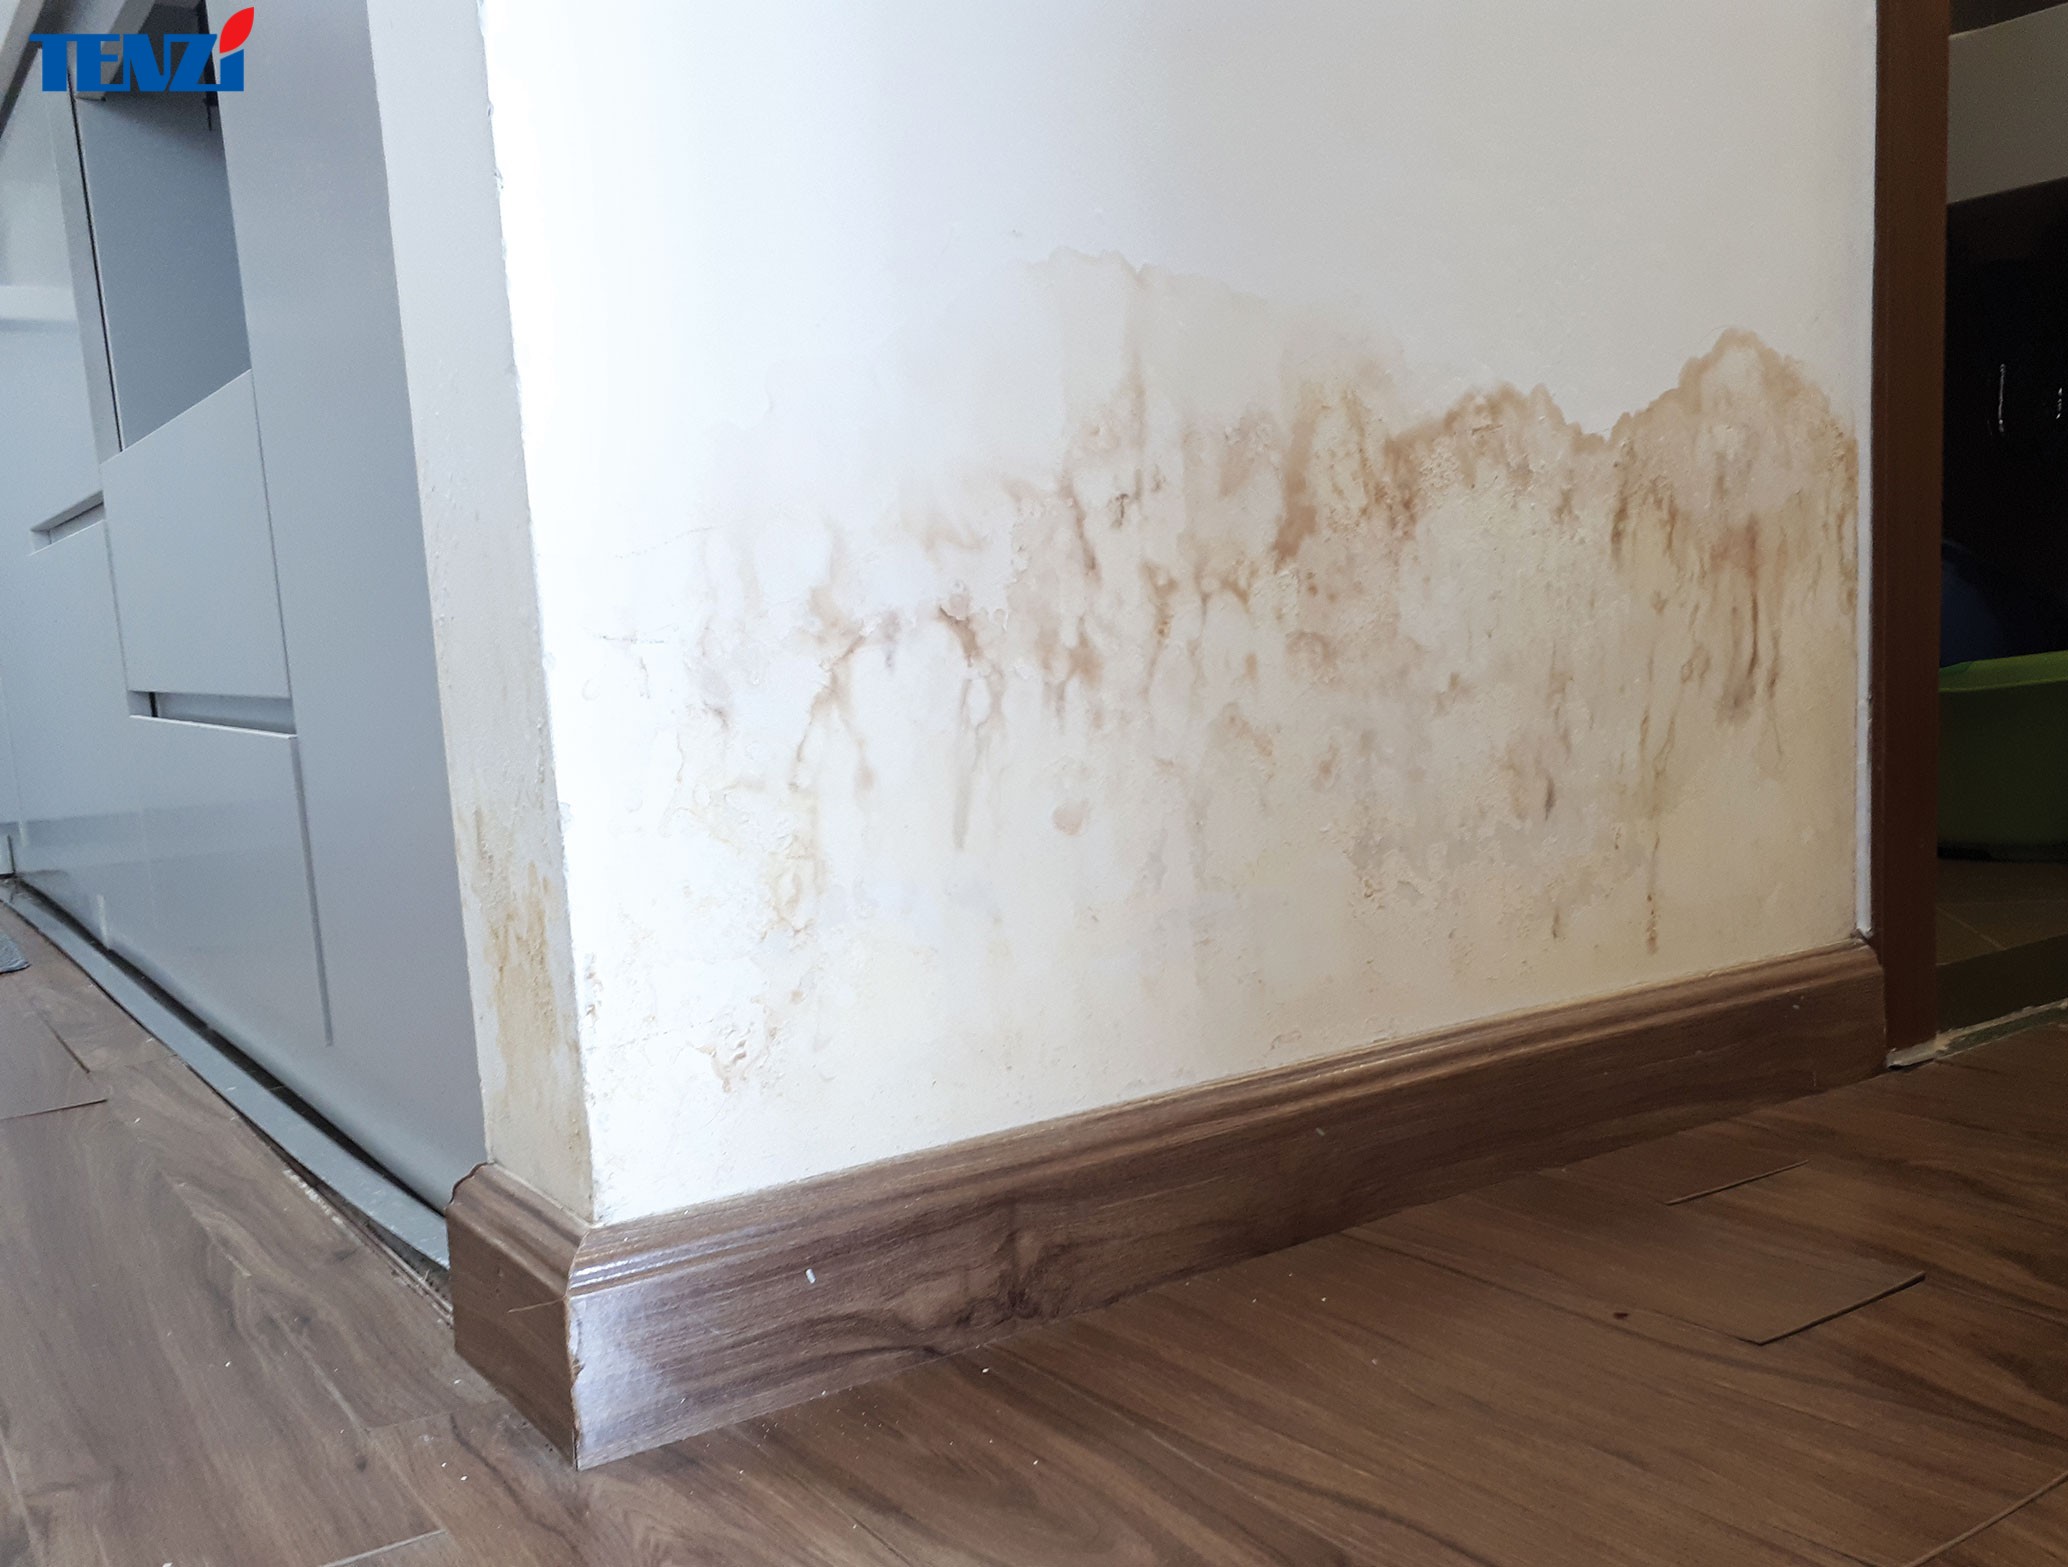 Sau khi cạo sạch đi lớp sơn đã cũ thì dùng sơn chống thấm lăn lên chân tường bị thấm.